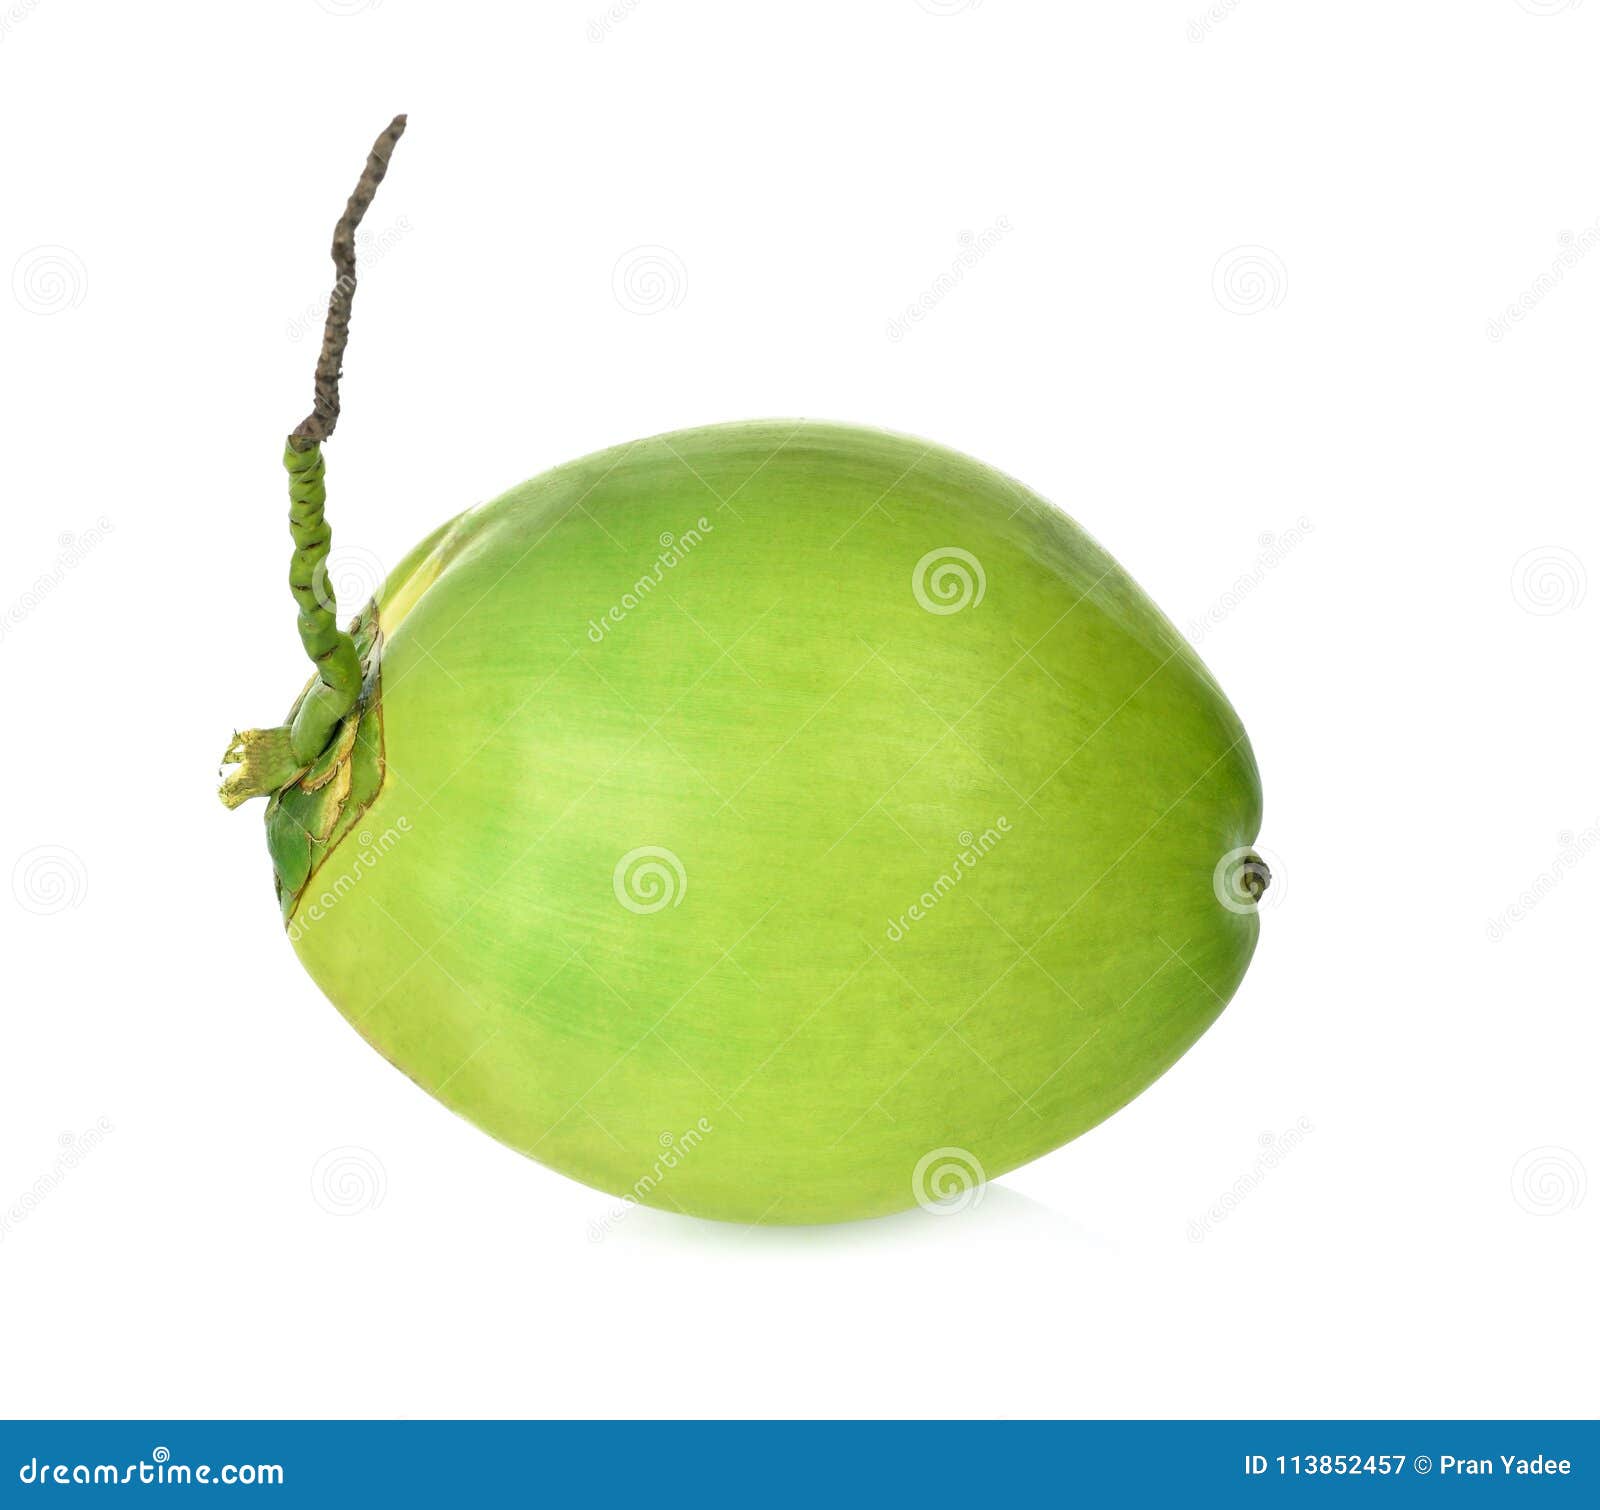 Green Coconut Fruit Isolated on White Background. Stock Image - Image ...